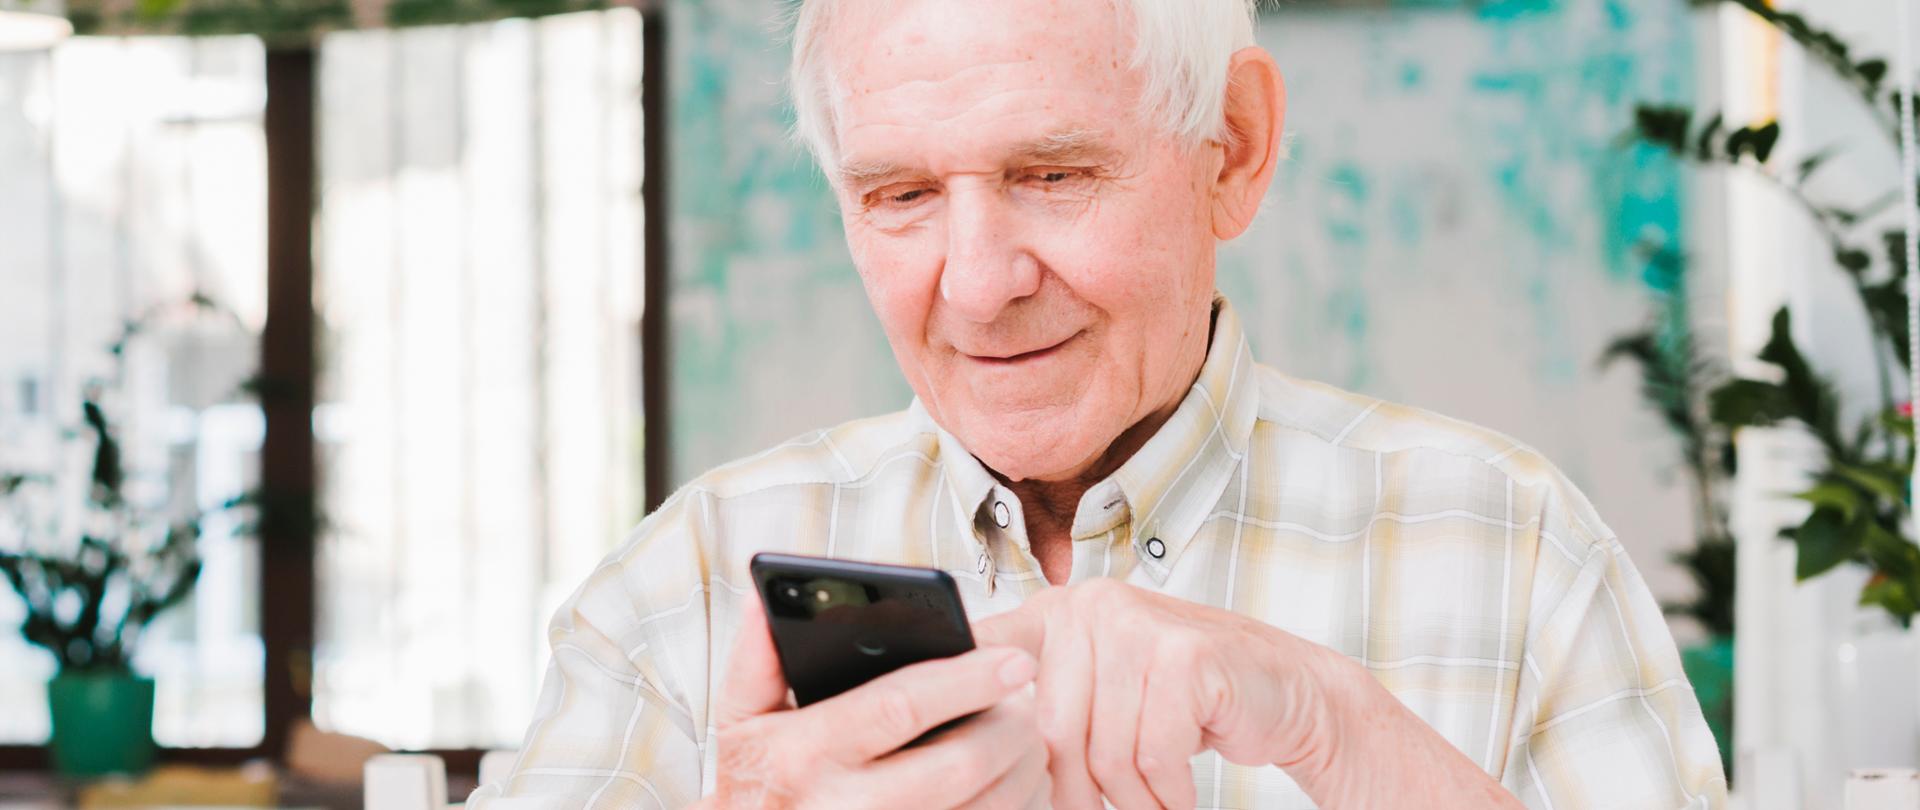 Zdjęcie ilustracyjne w poziomie. Na pierwszym planie starszy mężczyzna, ubrany w białą koszulę, siedzi przy stoliku. W ręku trzyma smartfona. 